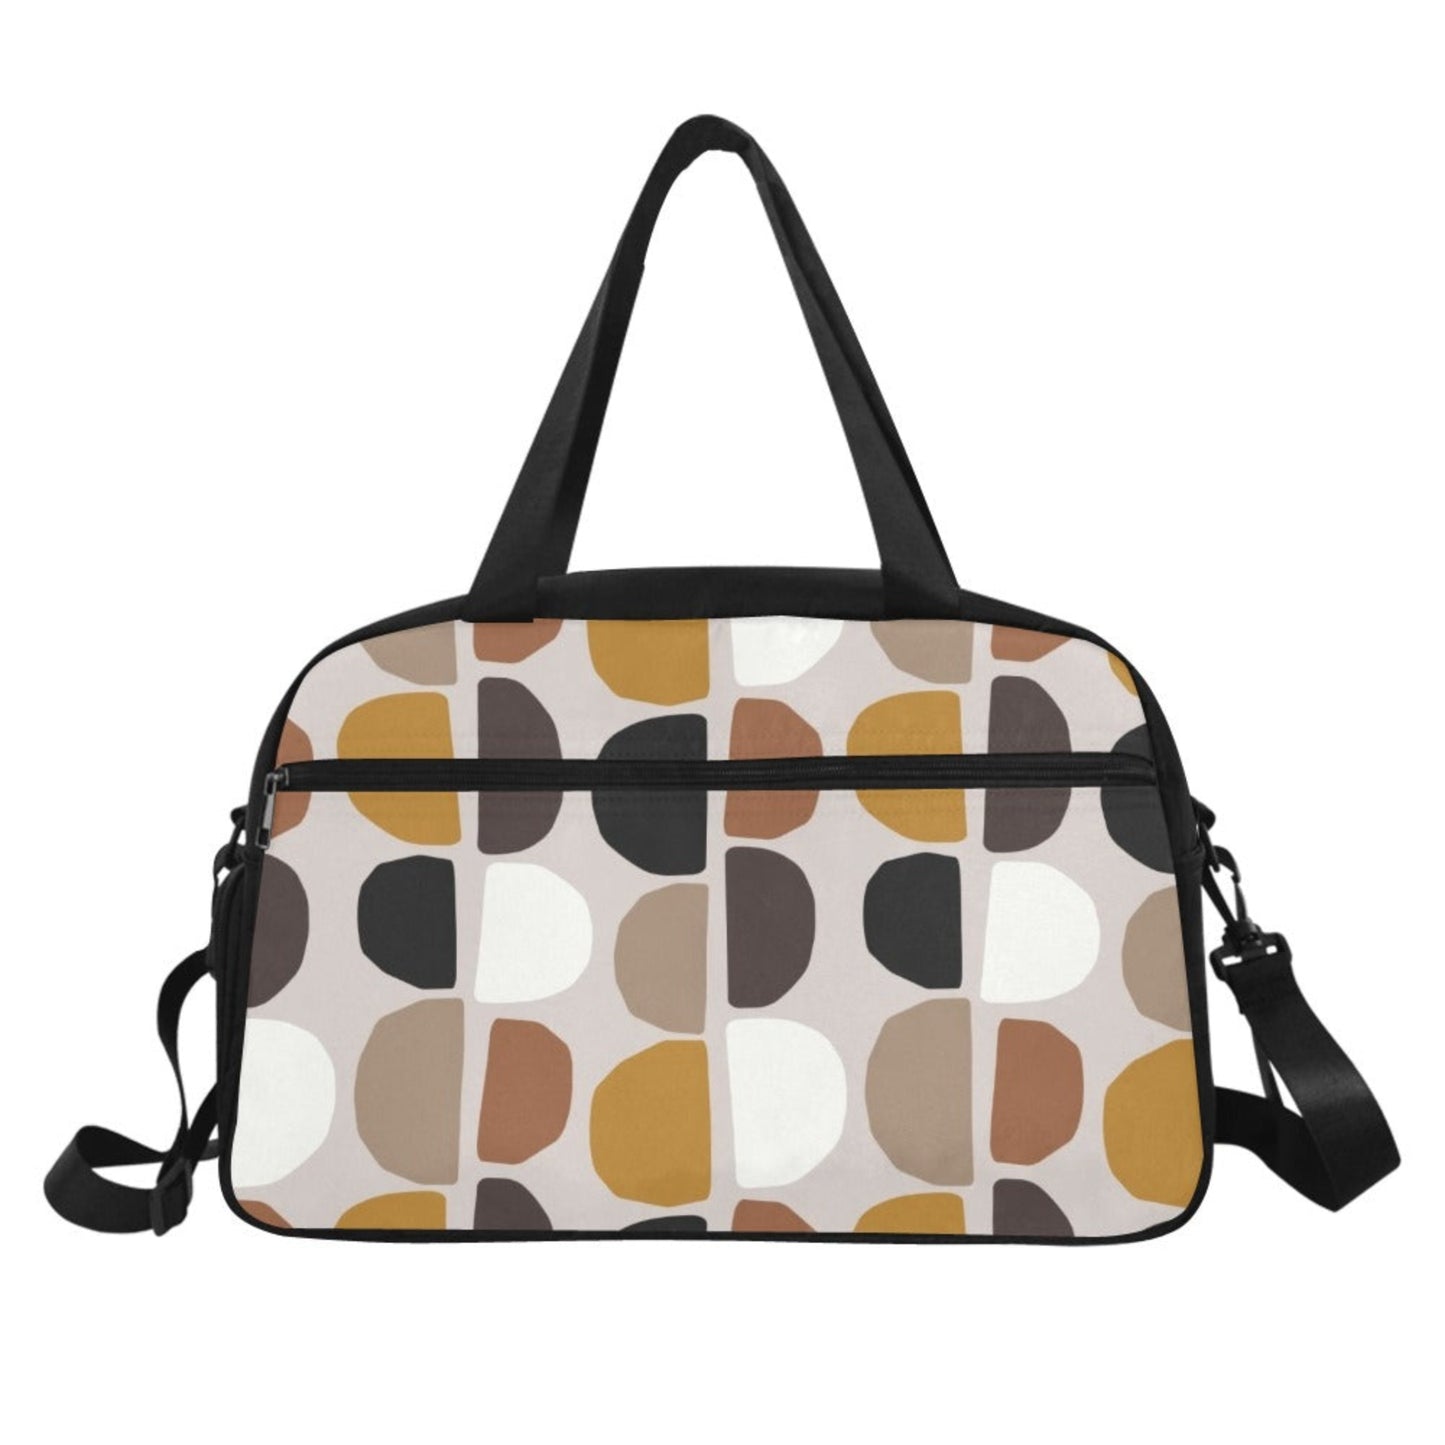 Pebble Brown - Gym Bag Gym Bag